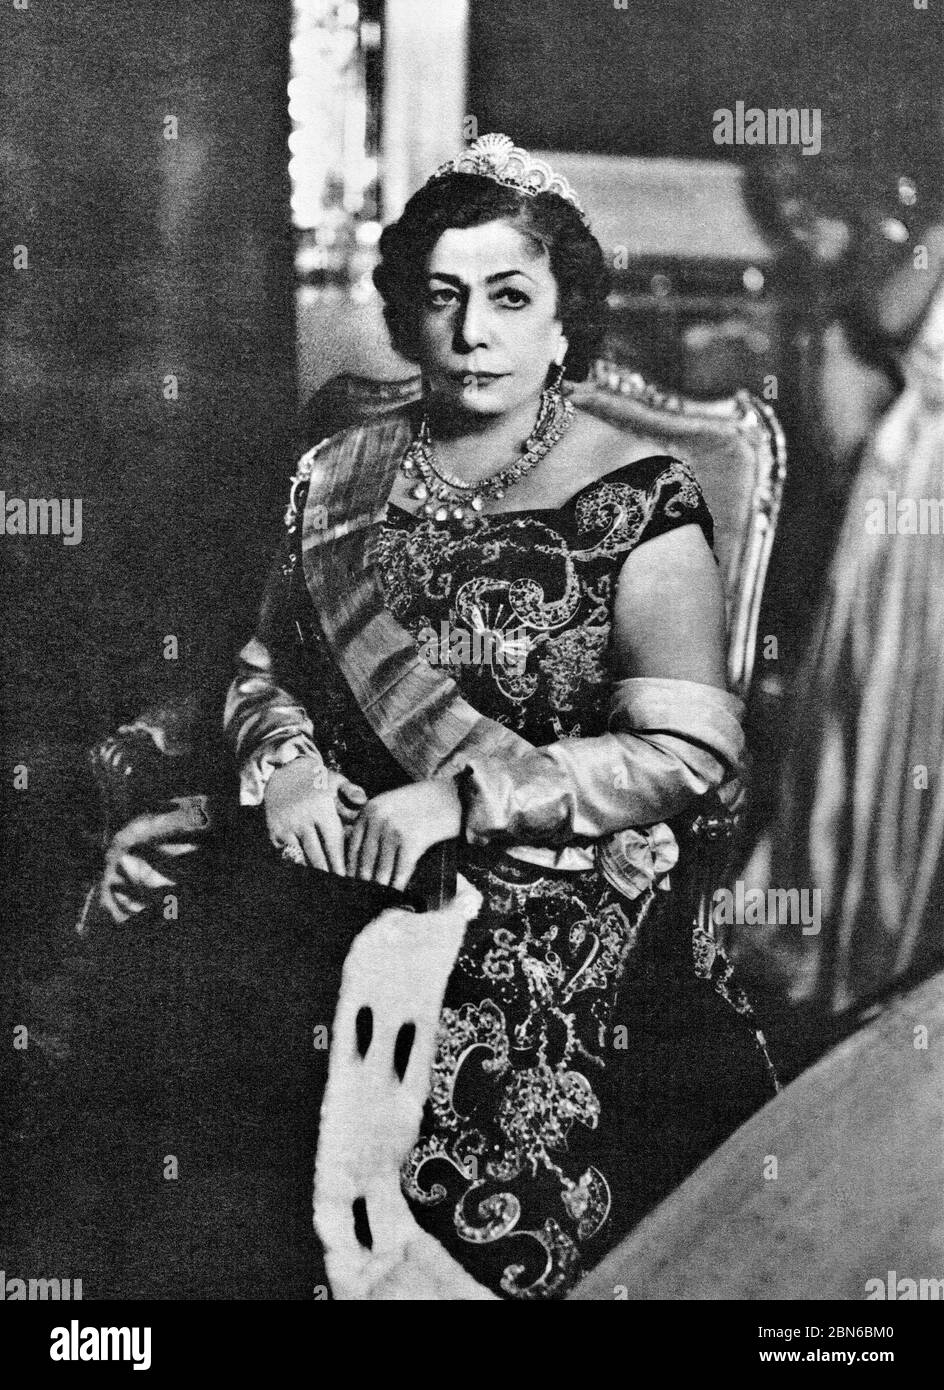 Iran: Tadj ol-Molouk (1896 - 1982), Reine d'Iran et marié à Reza Shah Pahlavi (1878 - 1944), le Shah d'Iran, c. années 1930. Tadj ol-Molouk (né ni Banque D'Images